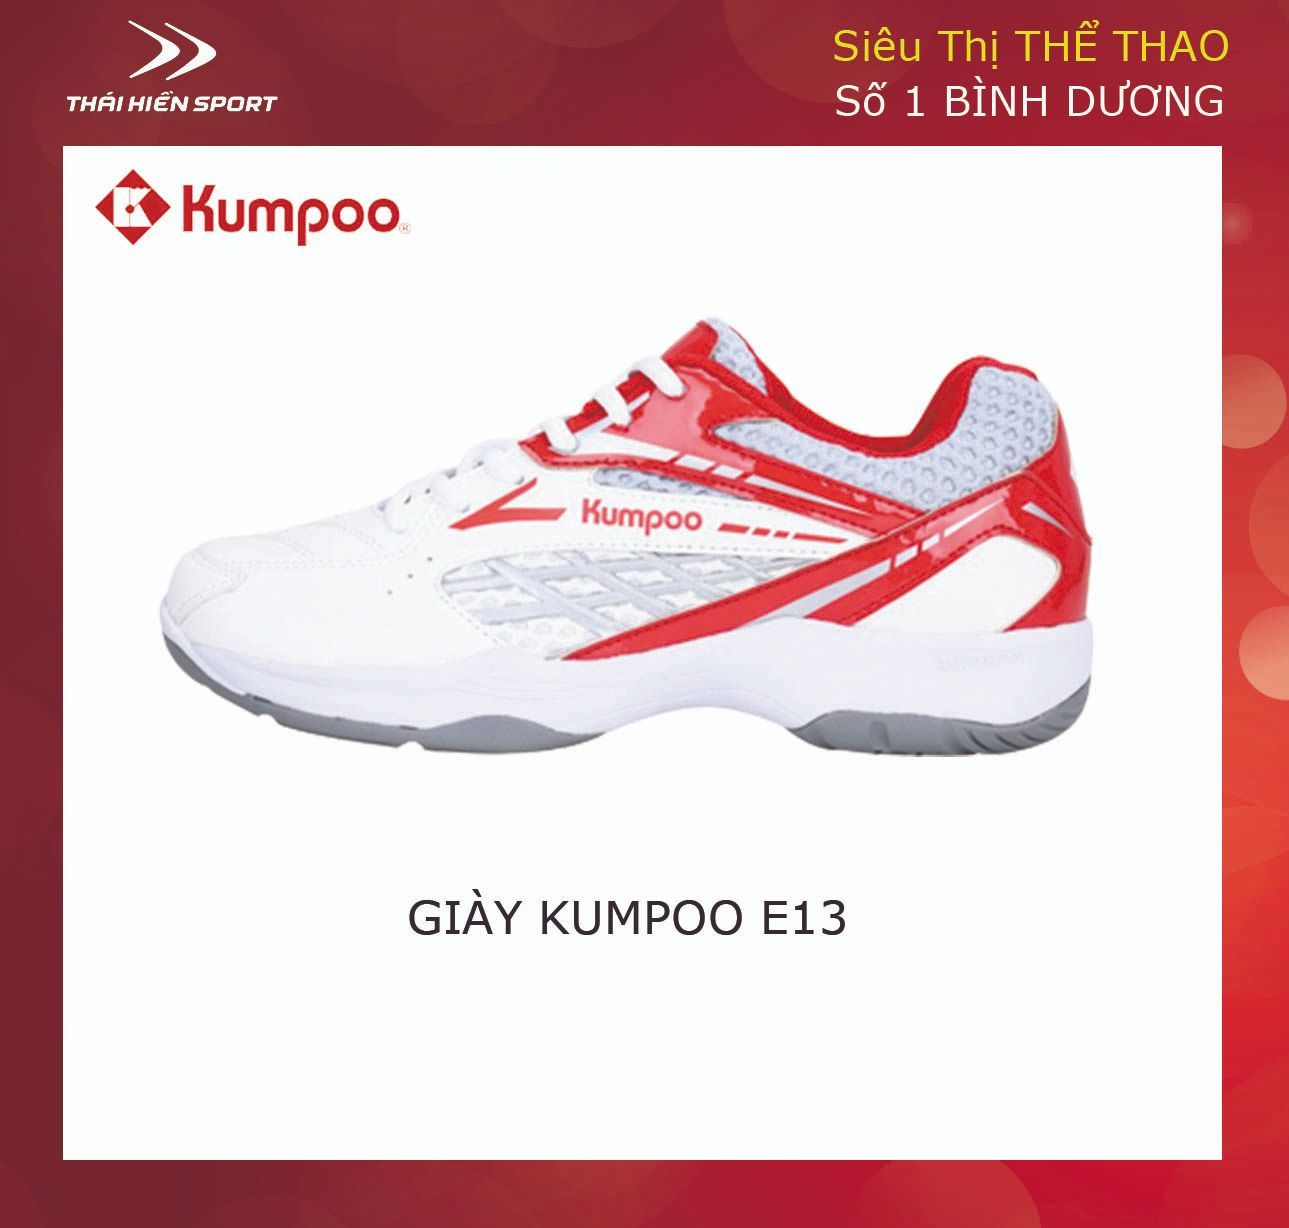  Giày cầu lông Kumpoo E13 trắng đỏ 